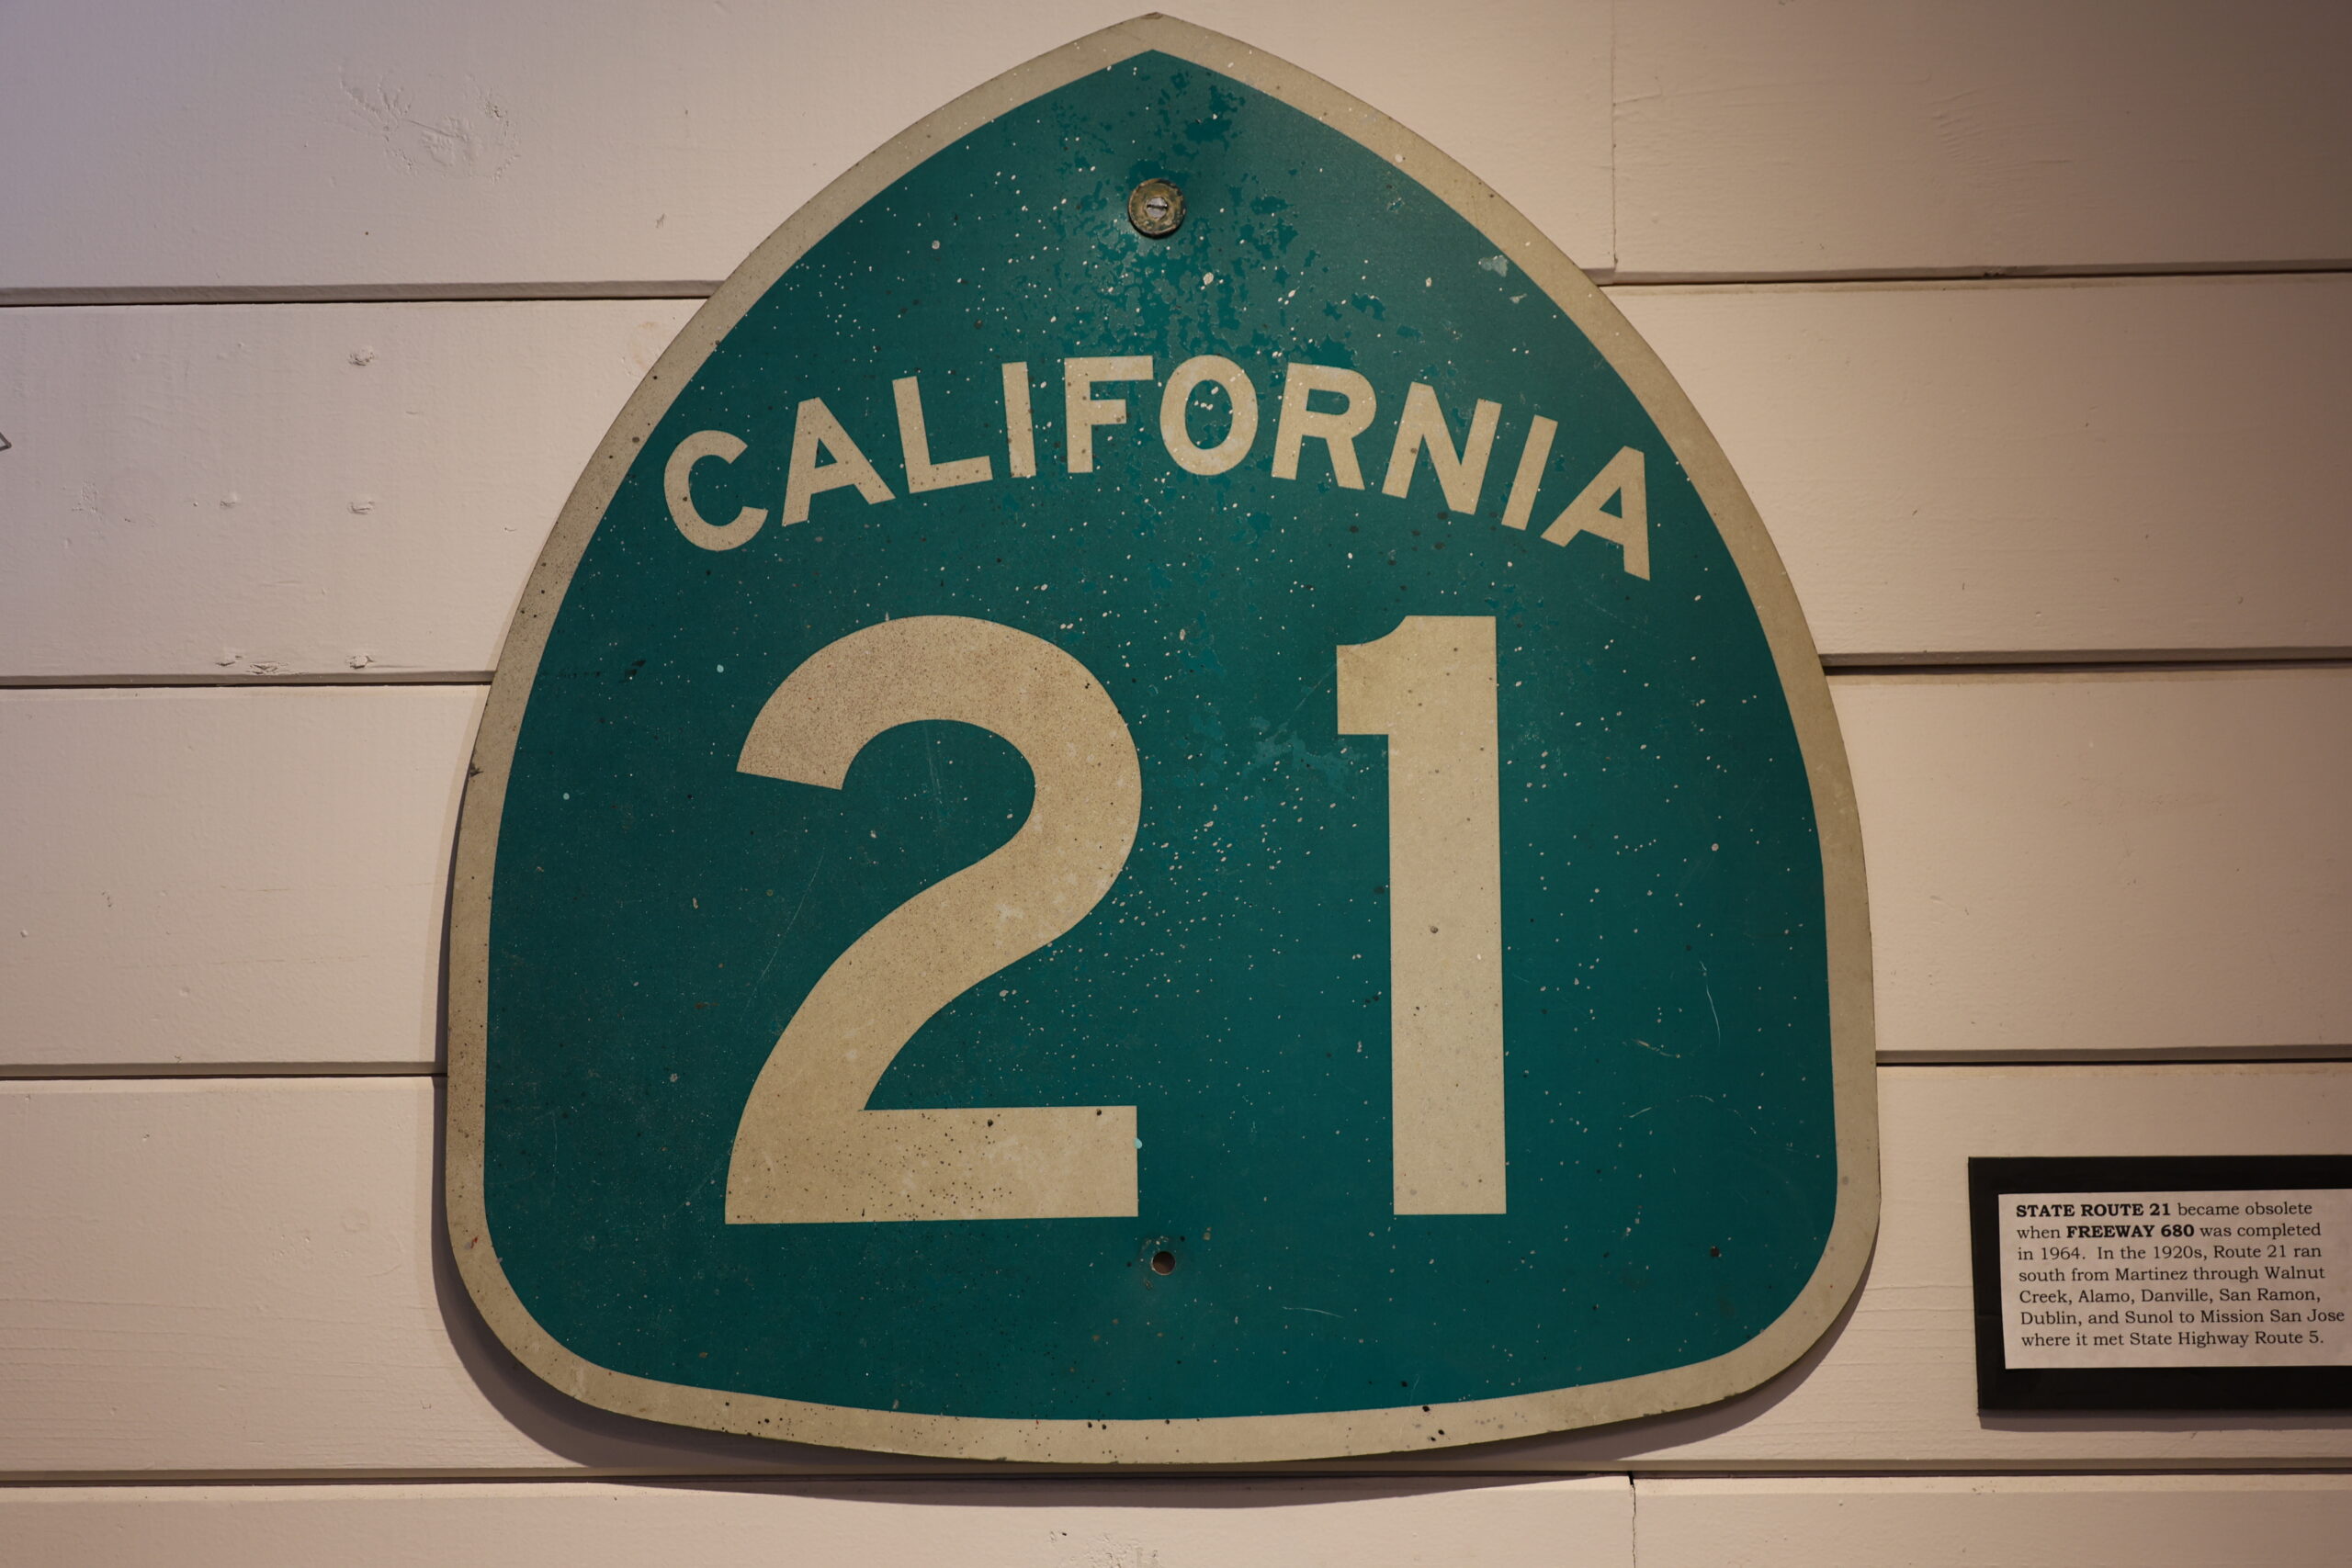 California 21